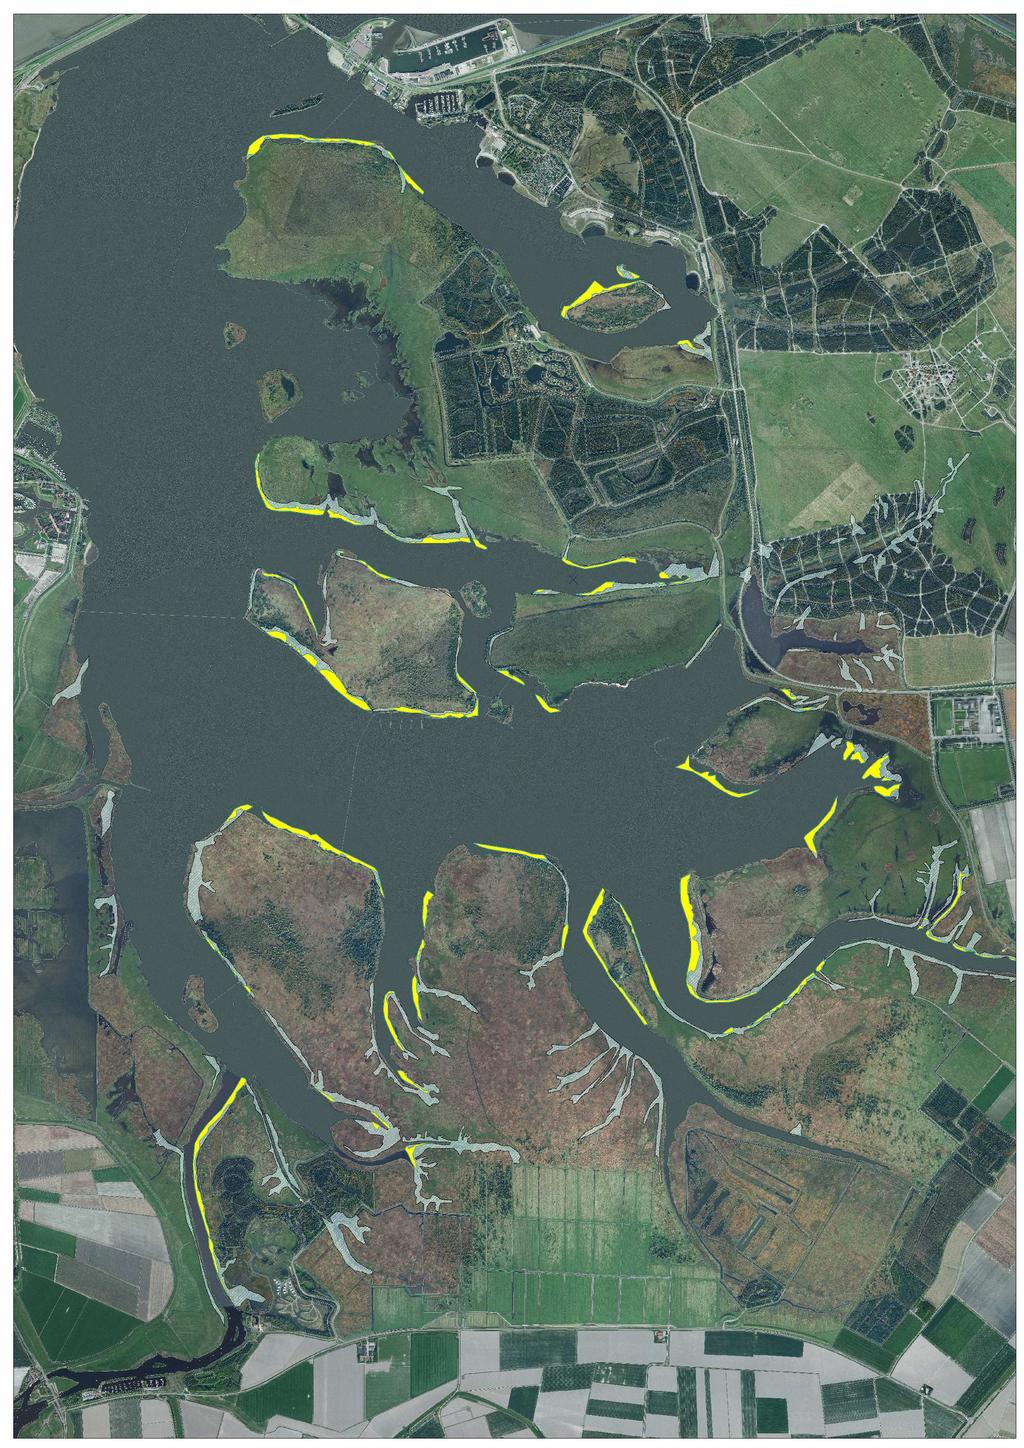 Natura 2000 Ontwerpbeheerplan Lauwersmeer Figuur 7: Achteruitgang van waterriet tussen 1980 en 1989, weergegeven op luchtfoto van 2008. Waterriet kwam alleen voor langs de plaatranden.